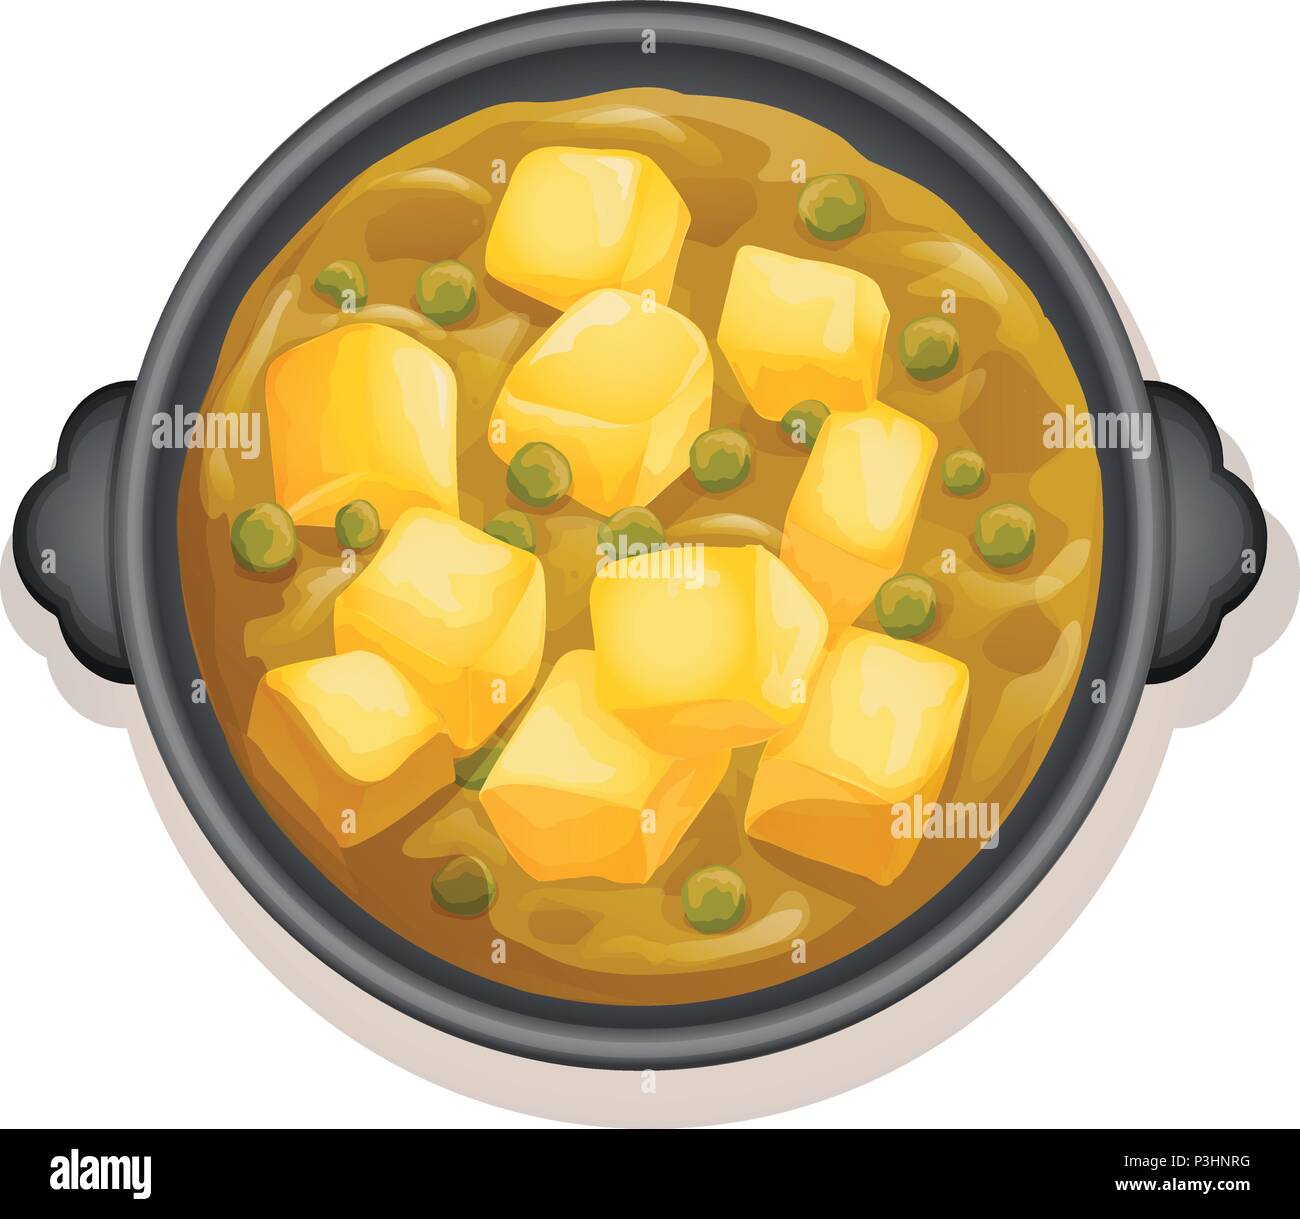 Ein Gelbes Curry auf heiße Pfanne Abbildung Stock Vektor